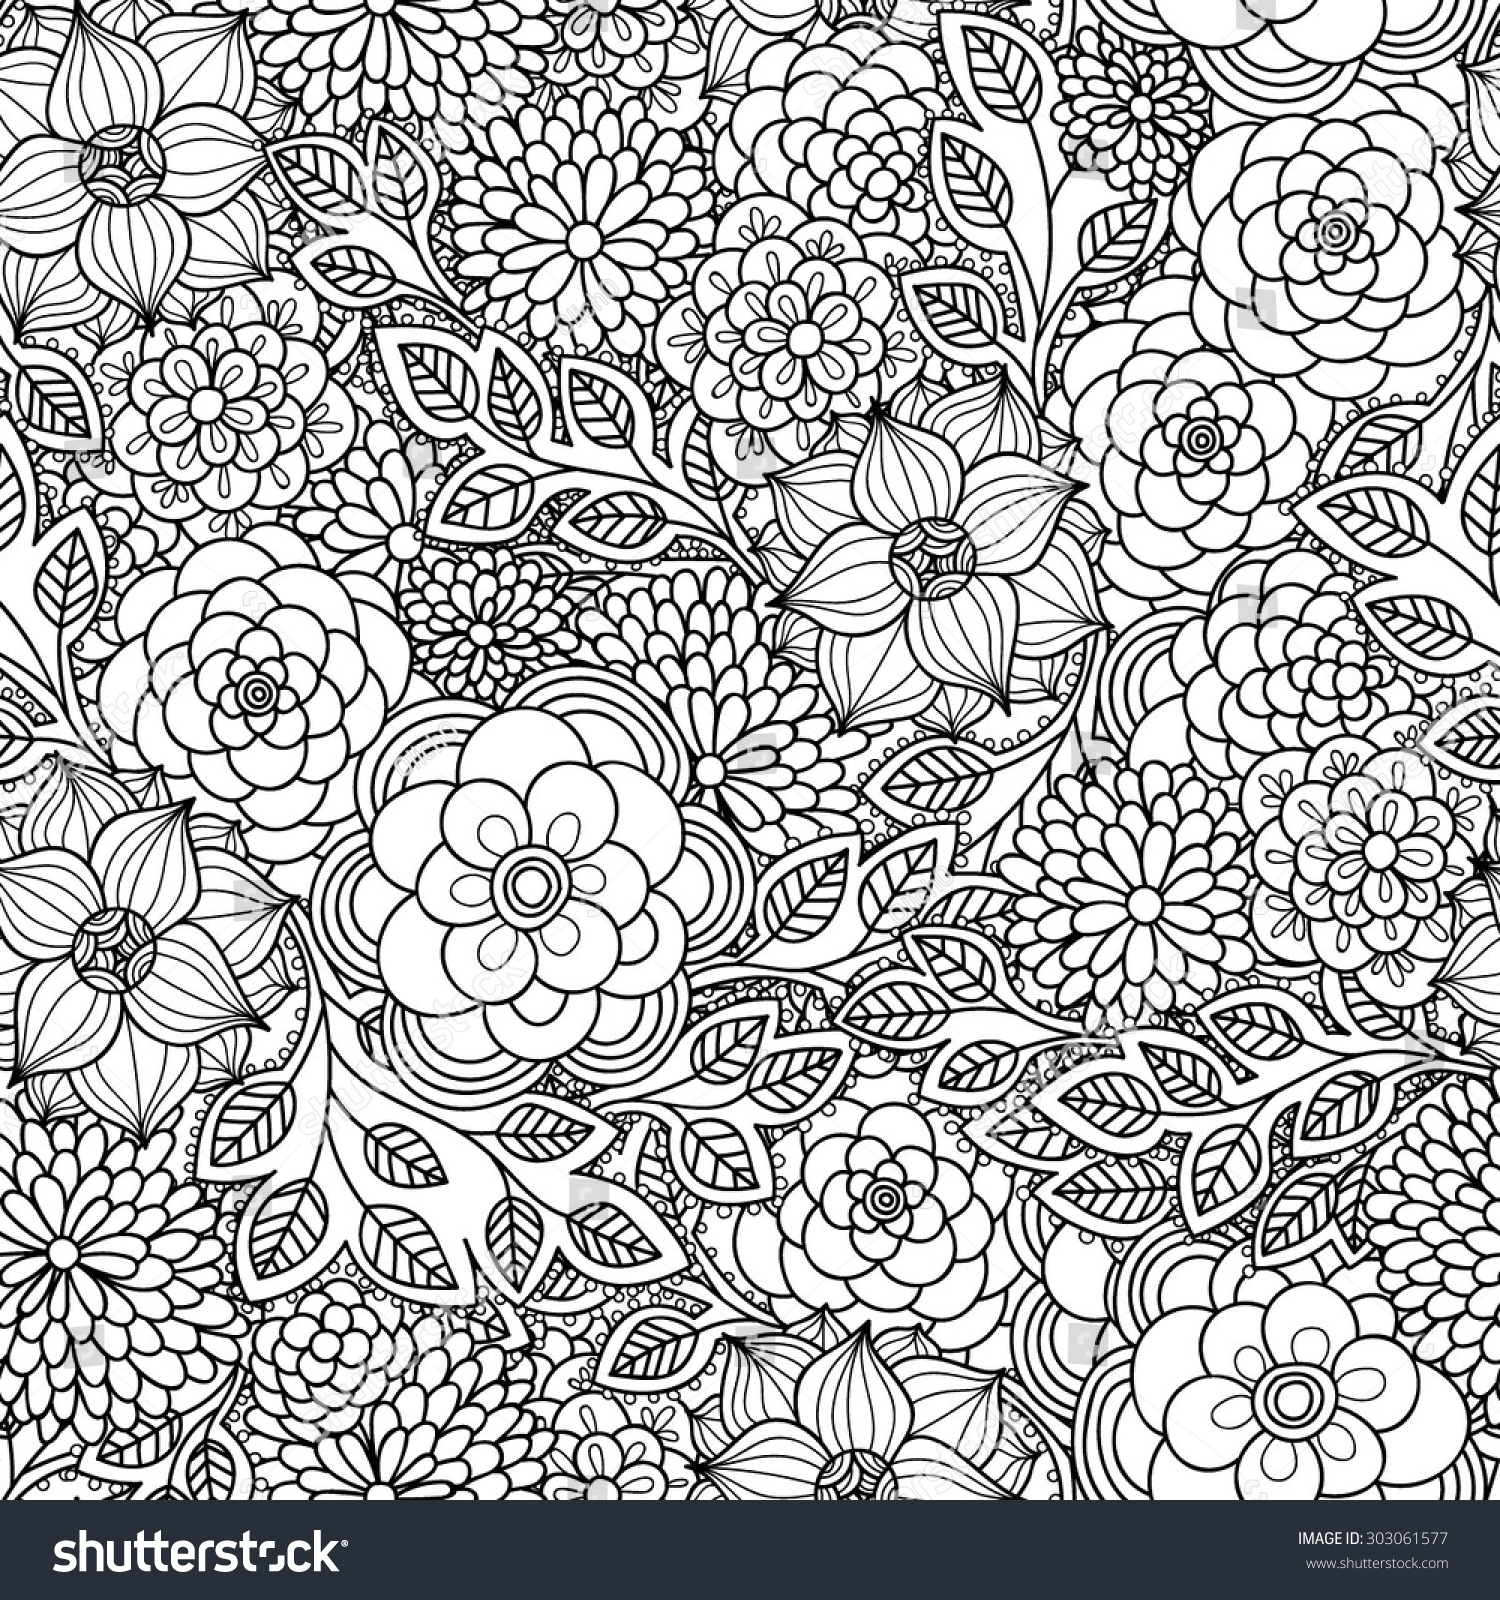 花柄のシームレスな柄 落書き風背景にゼンタングル 白黒の手描きのパターン のベクター画像素材 ロイヤリティフリー